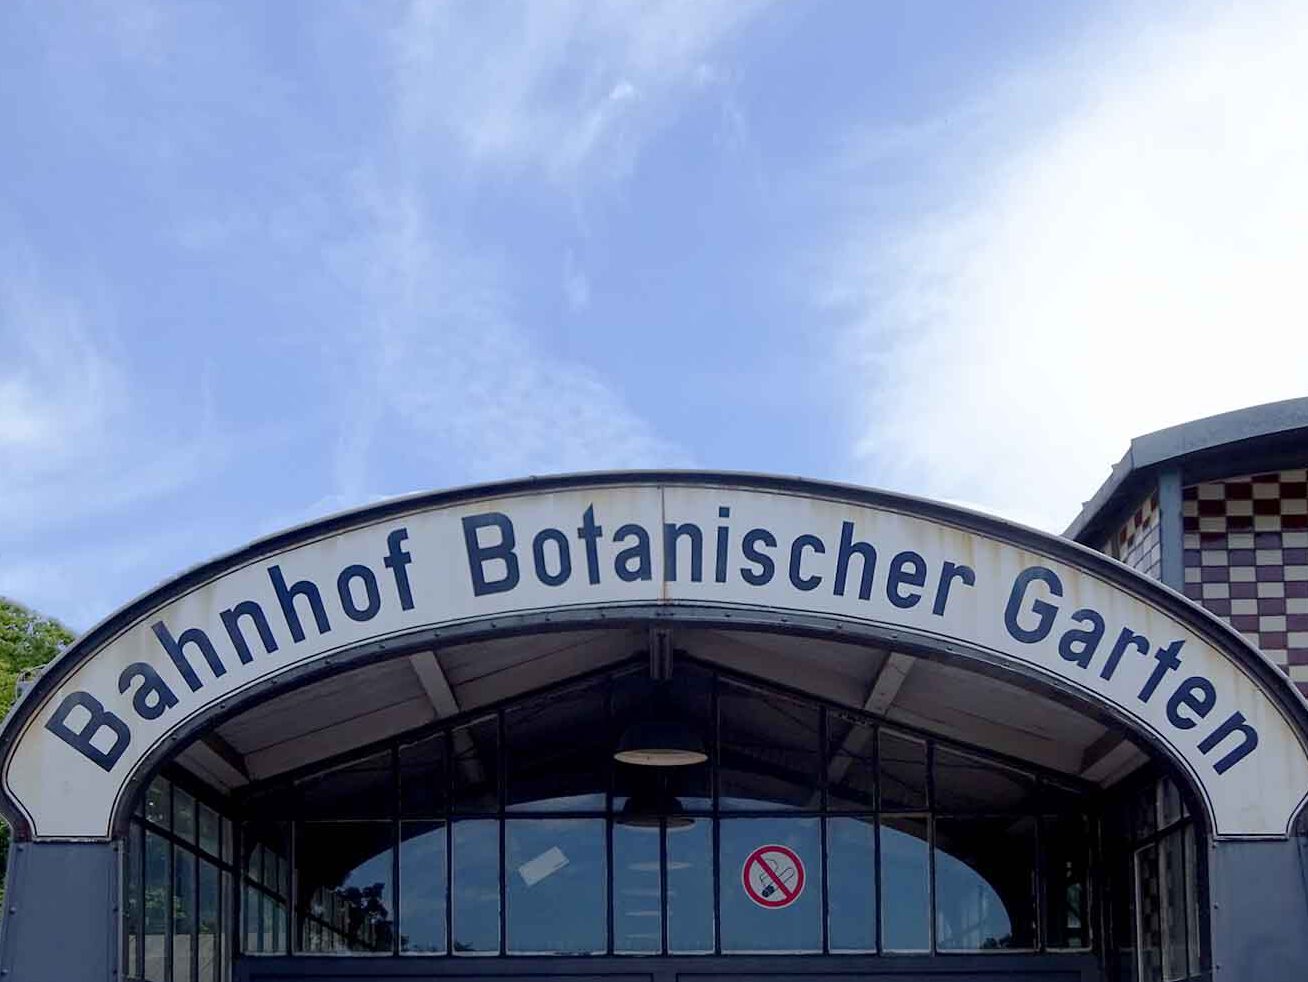 Der Berliner Botanische Garten besitzt wie der Vatikan einen eigenen Bahnhof, oder genauer gesagt eine S-Bahnstation.